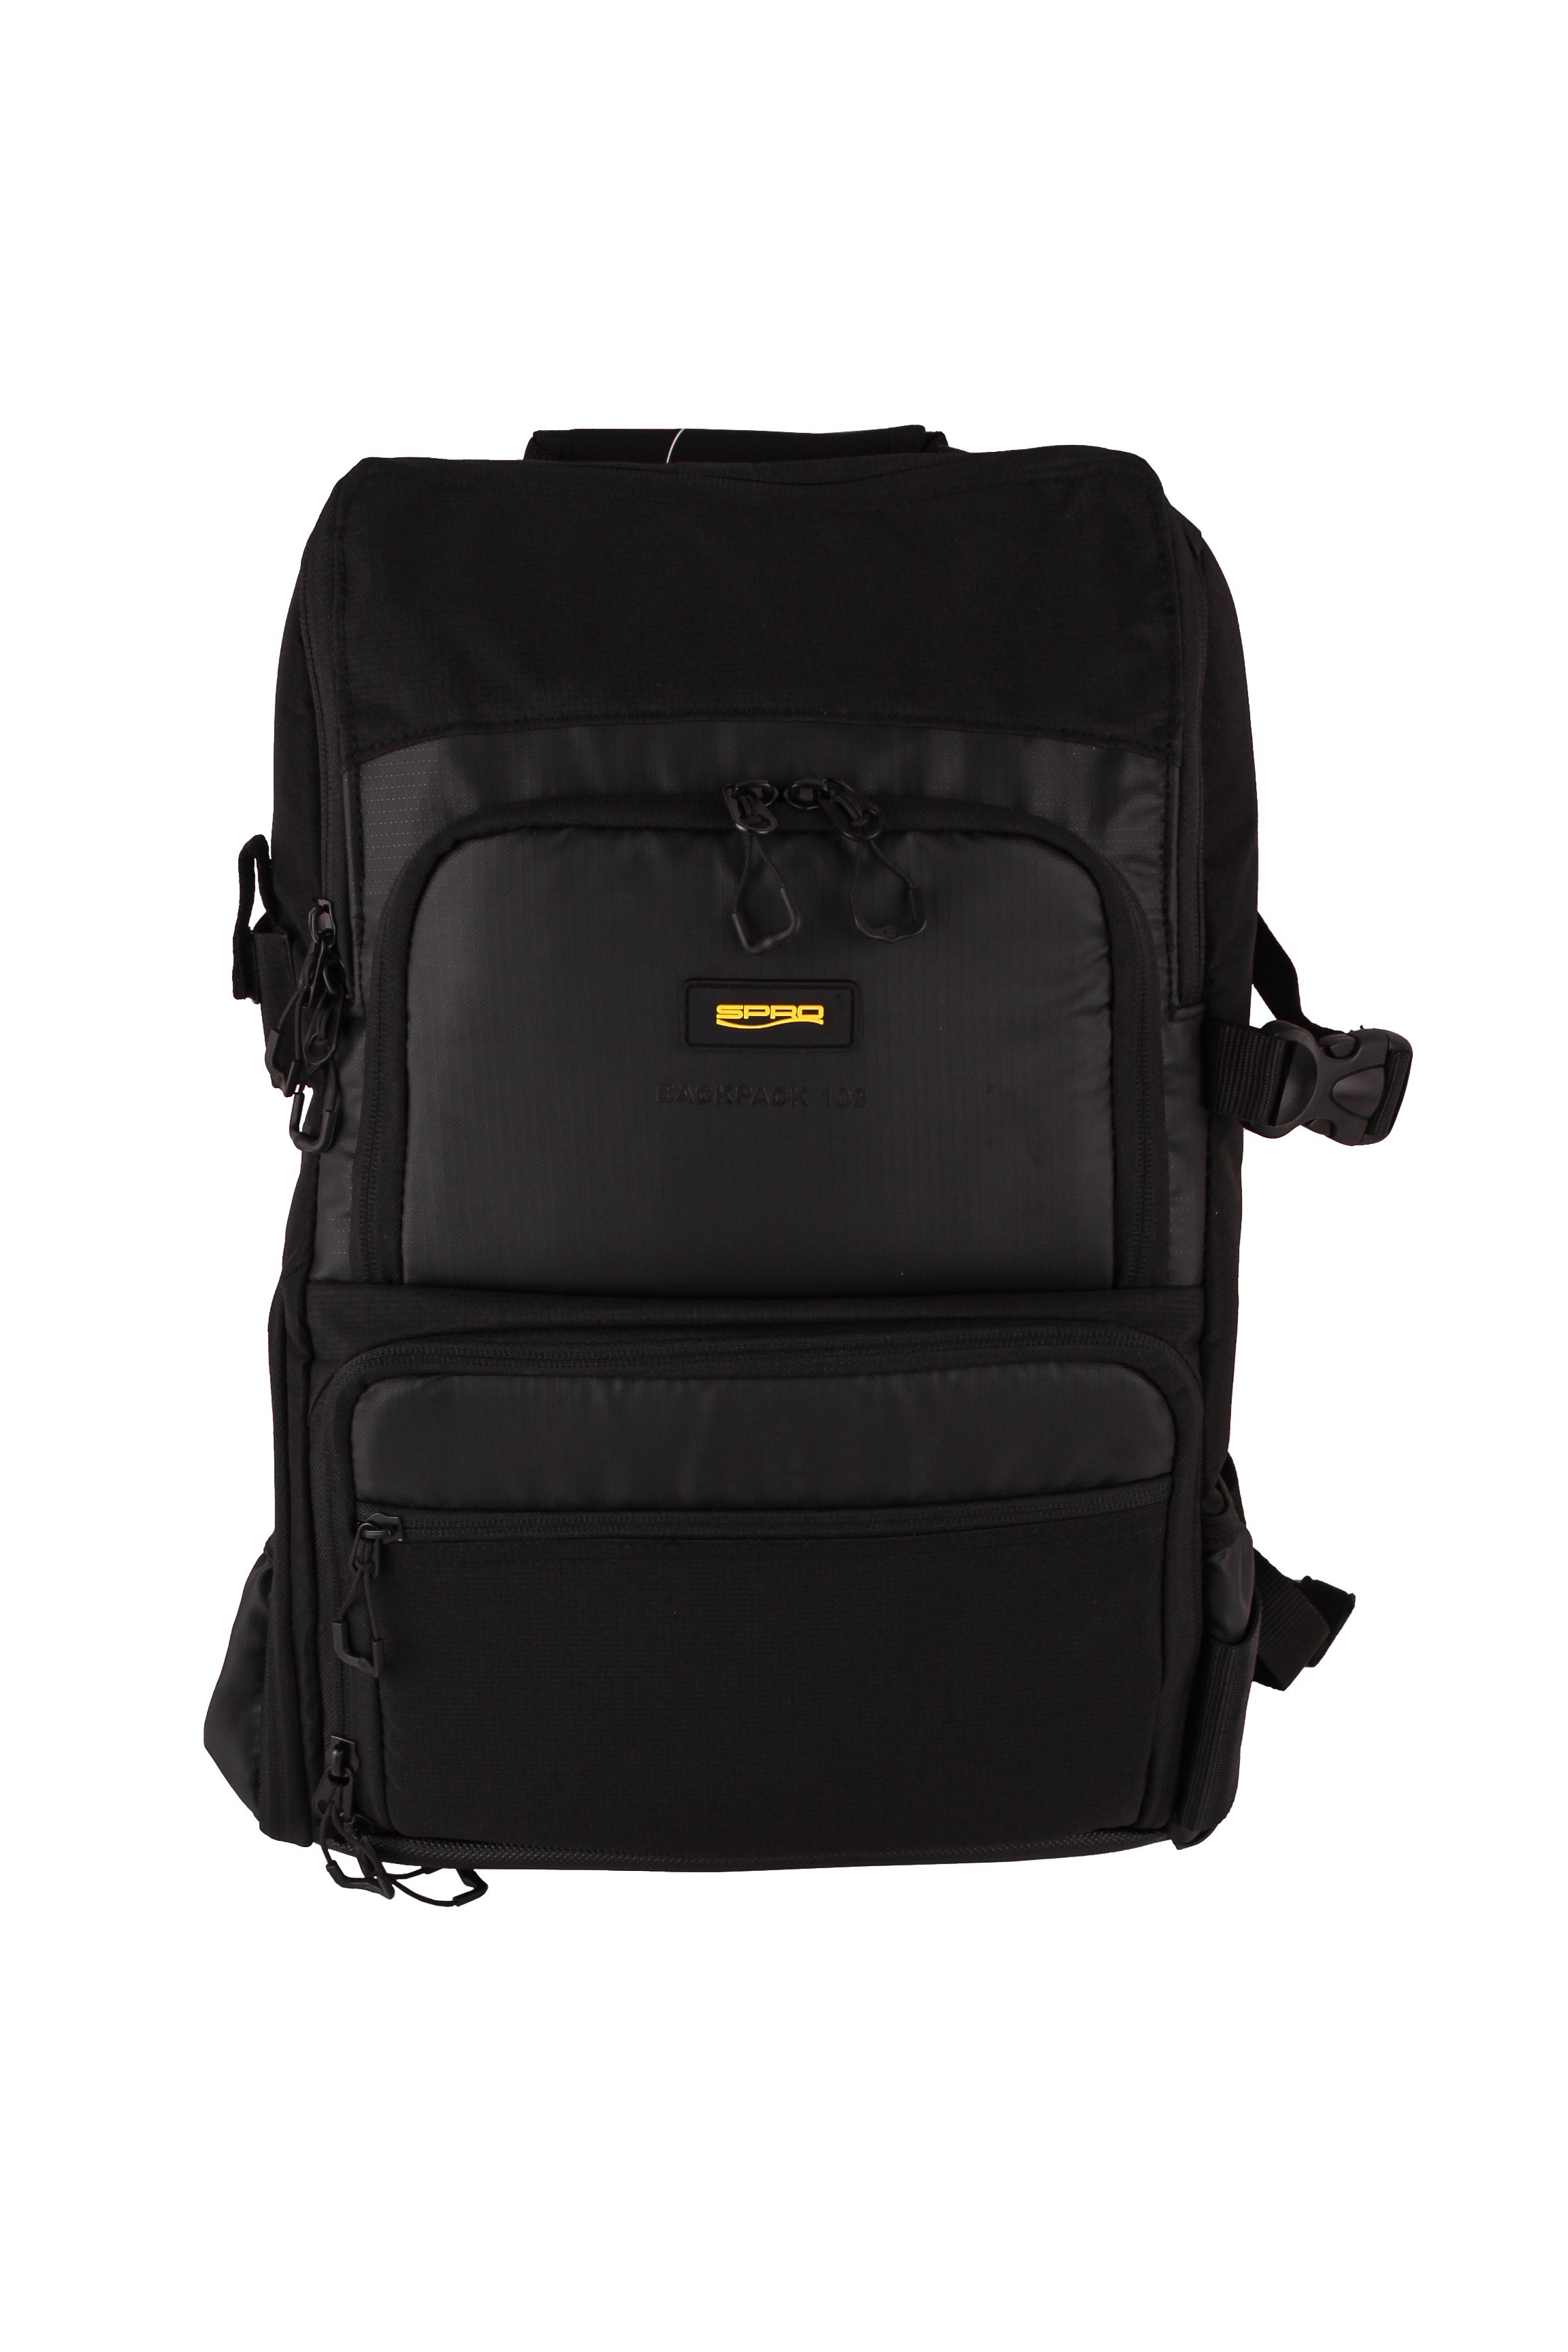 Рюкзак SPRO Backpack 102 - фото 1